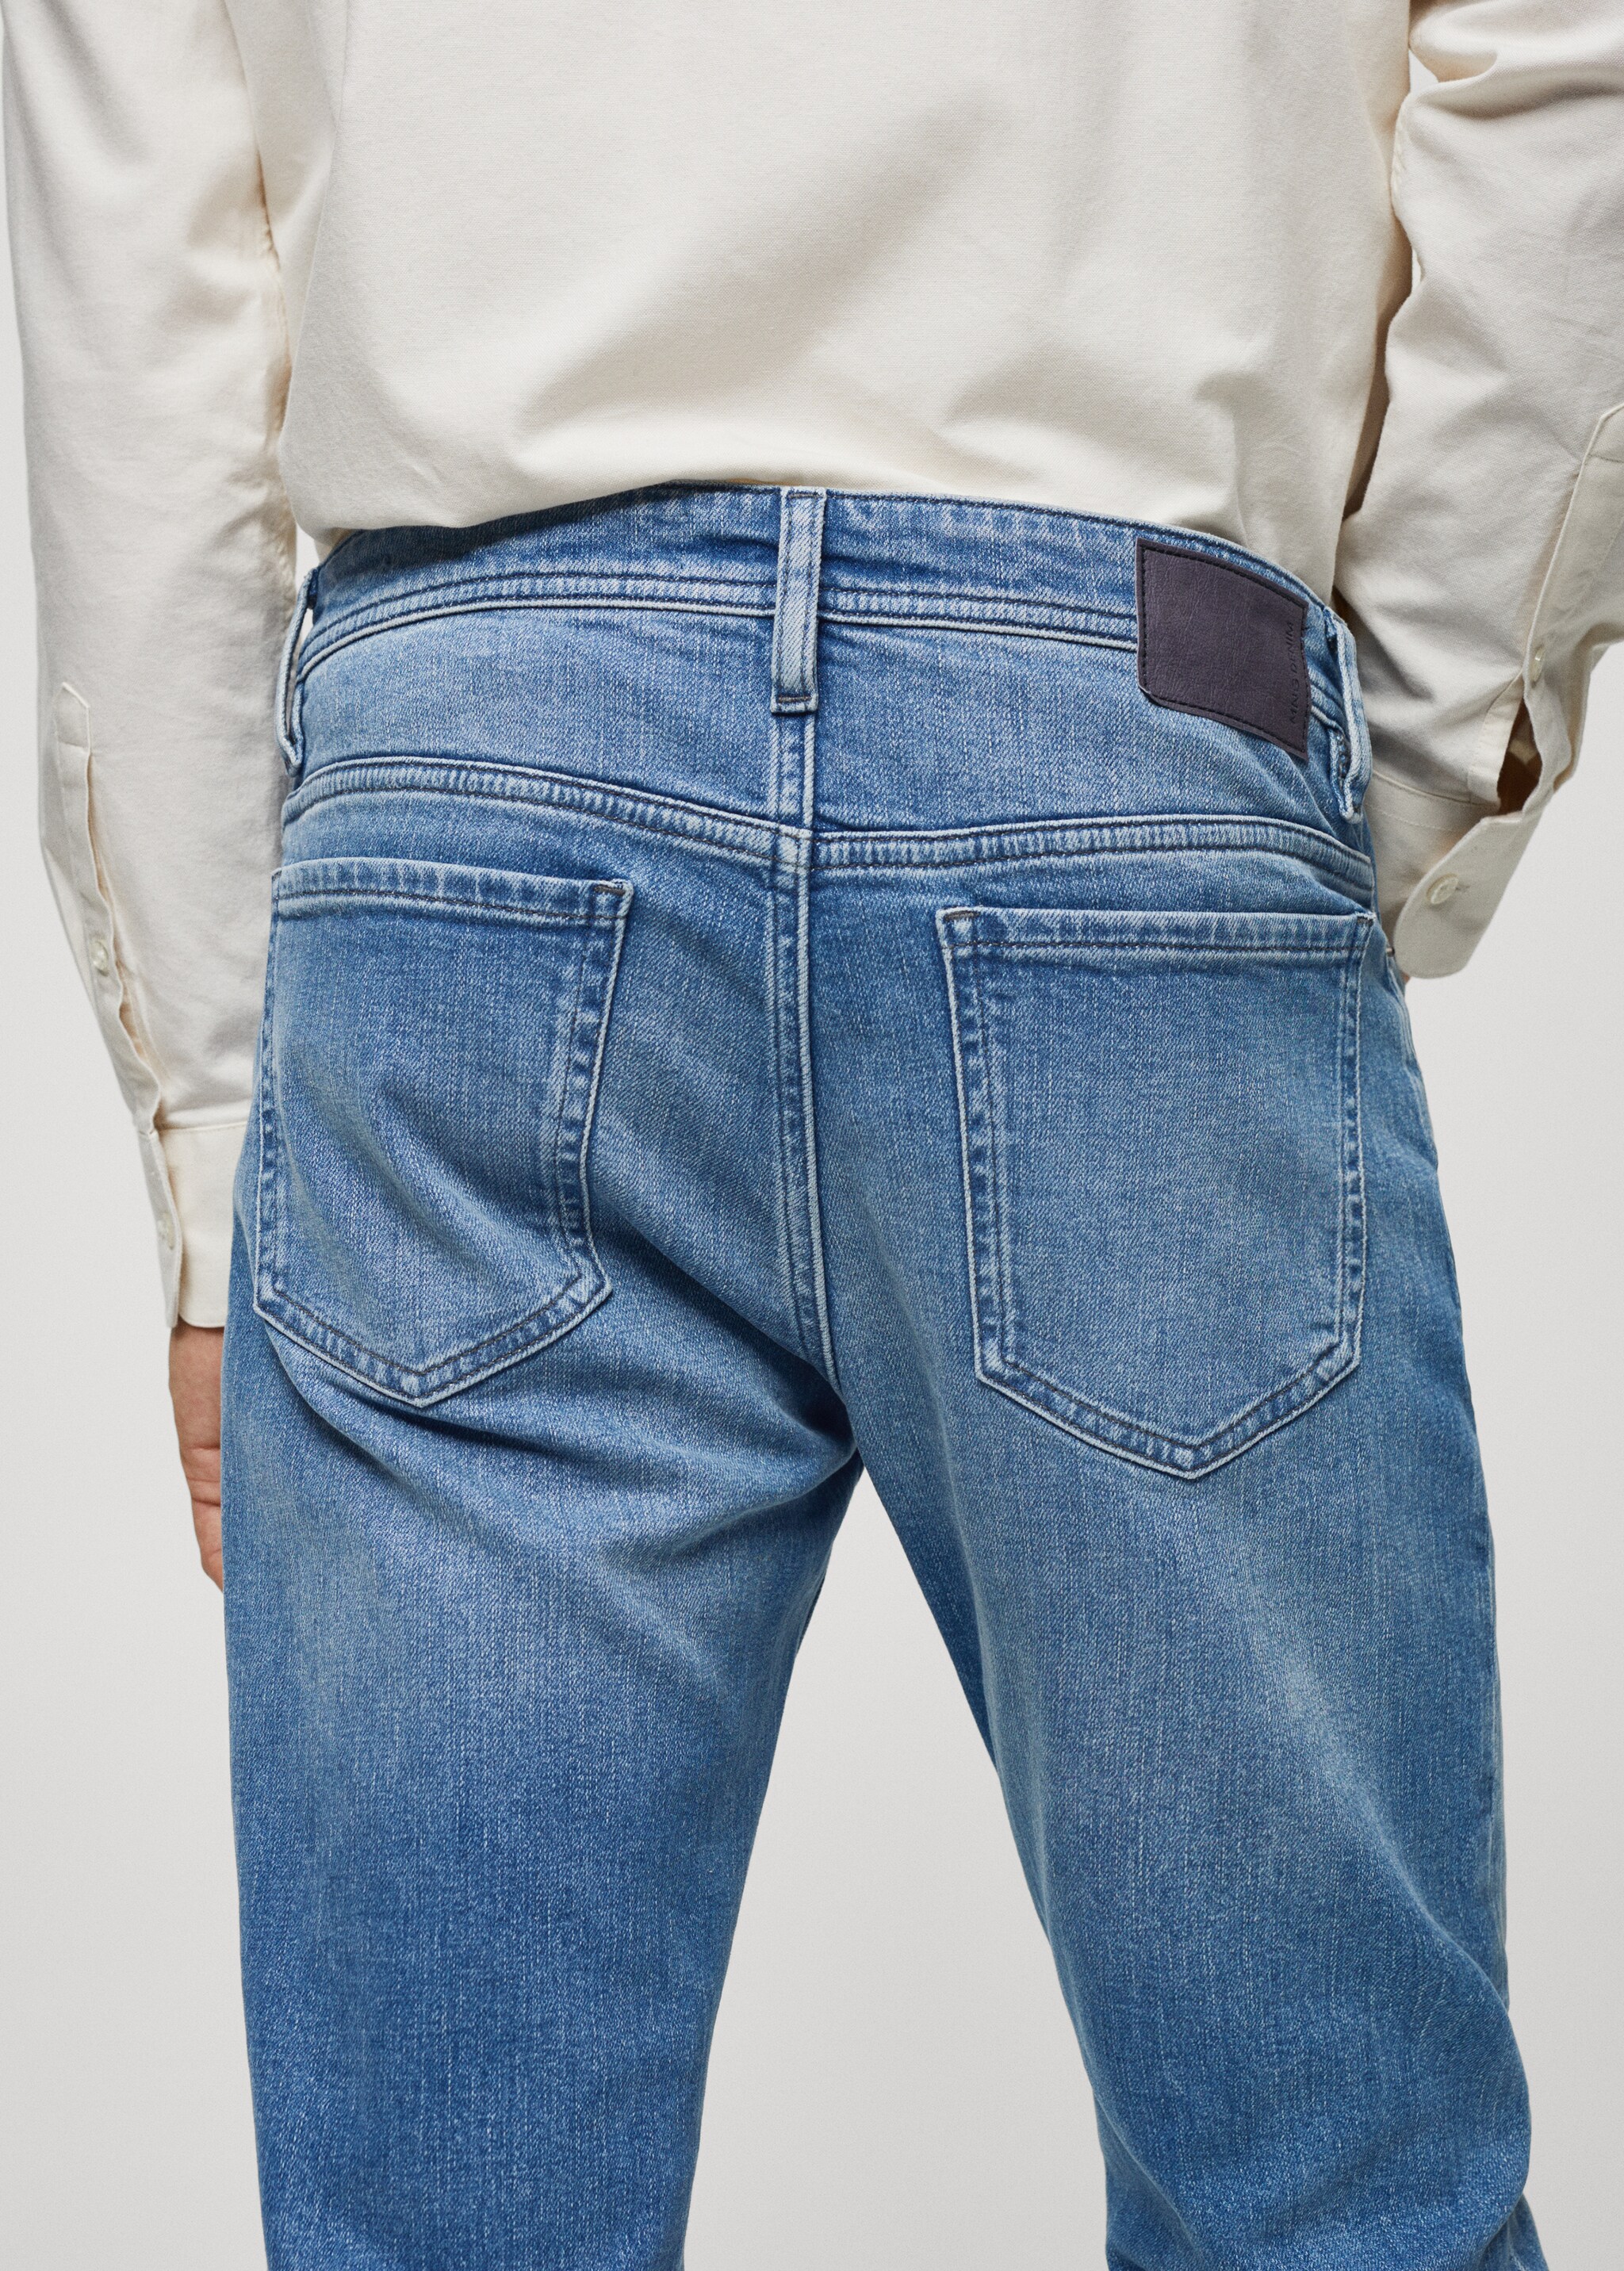 Jeans Jan slim fit - Pormenor do artigo 4